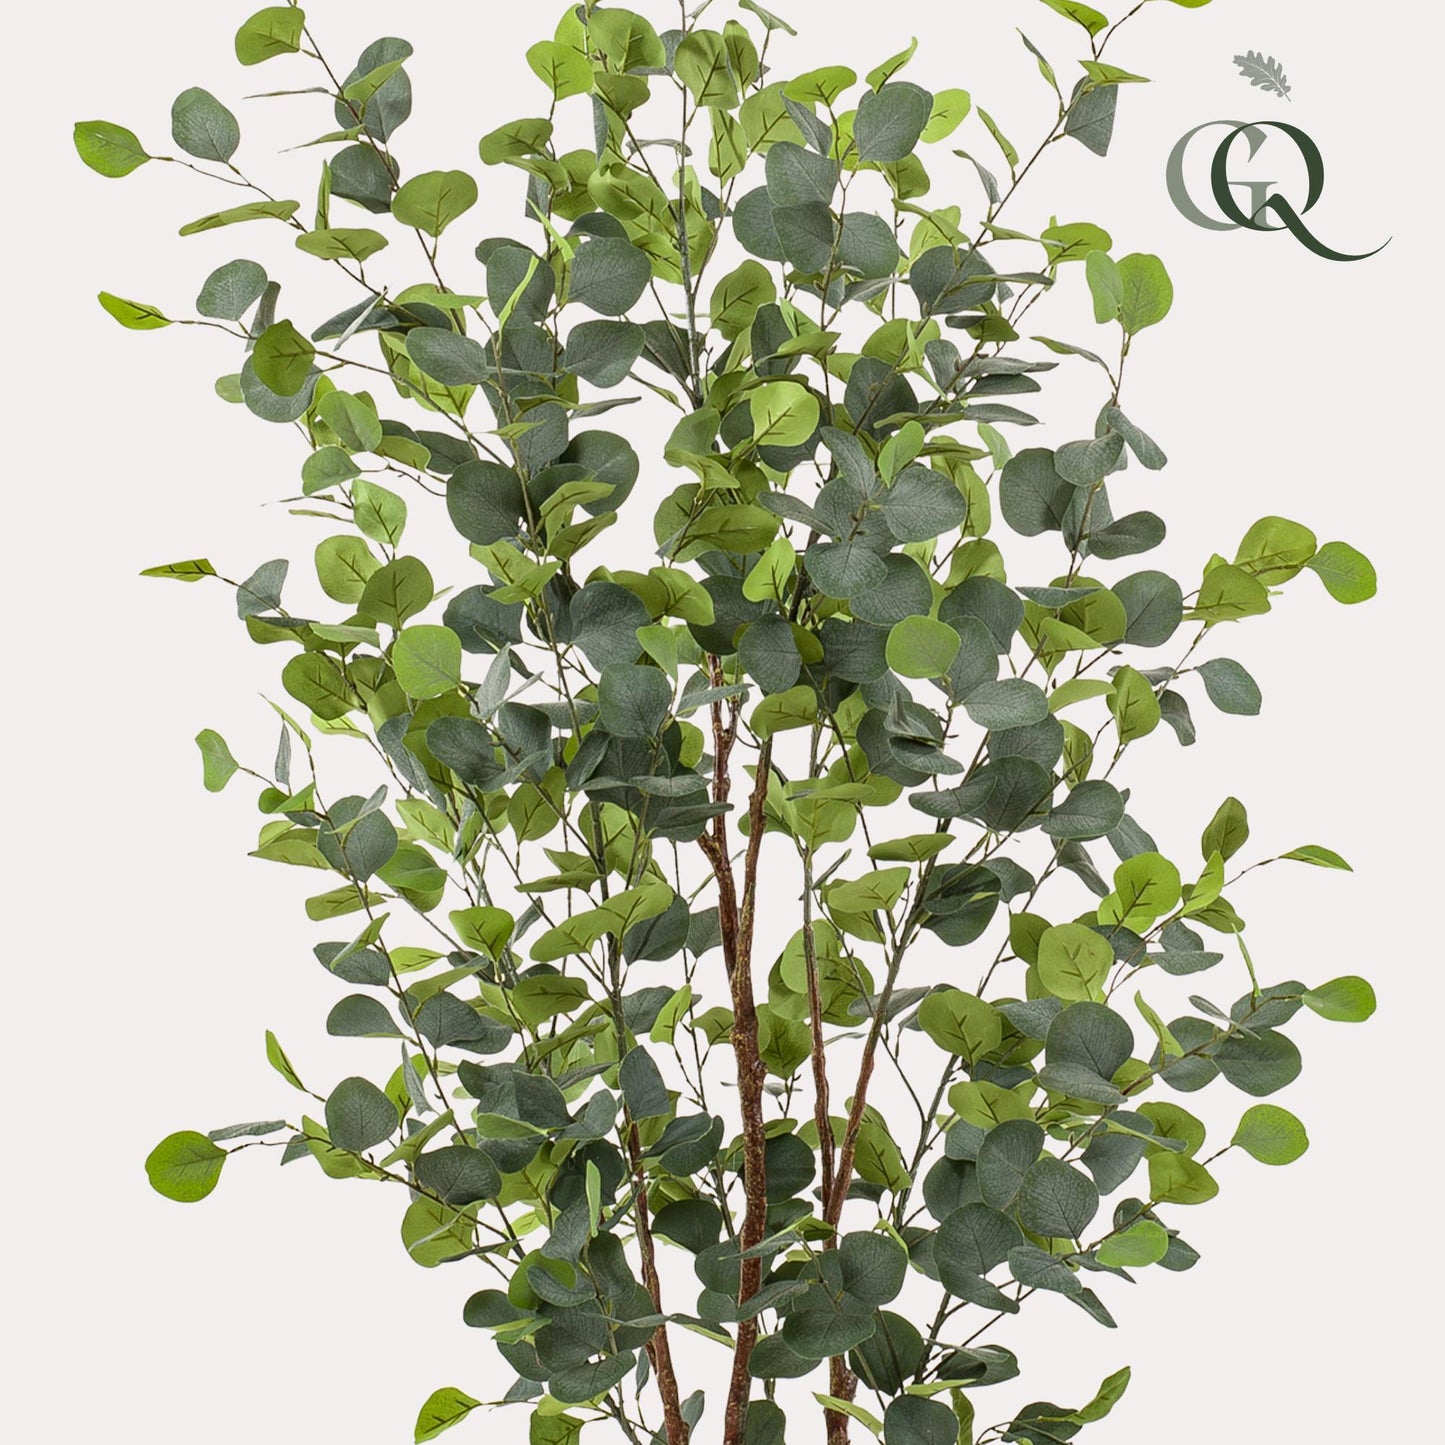 Kunstplant - Eucalyptus - Blauwe Gomboom - 140cm - 140